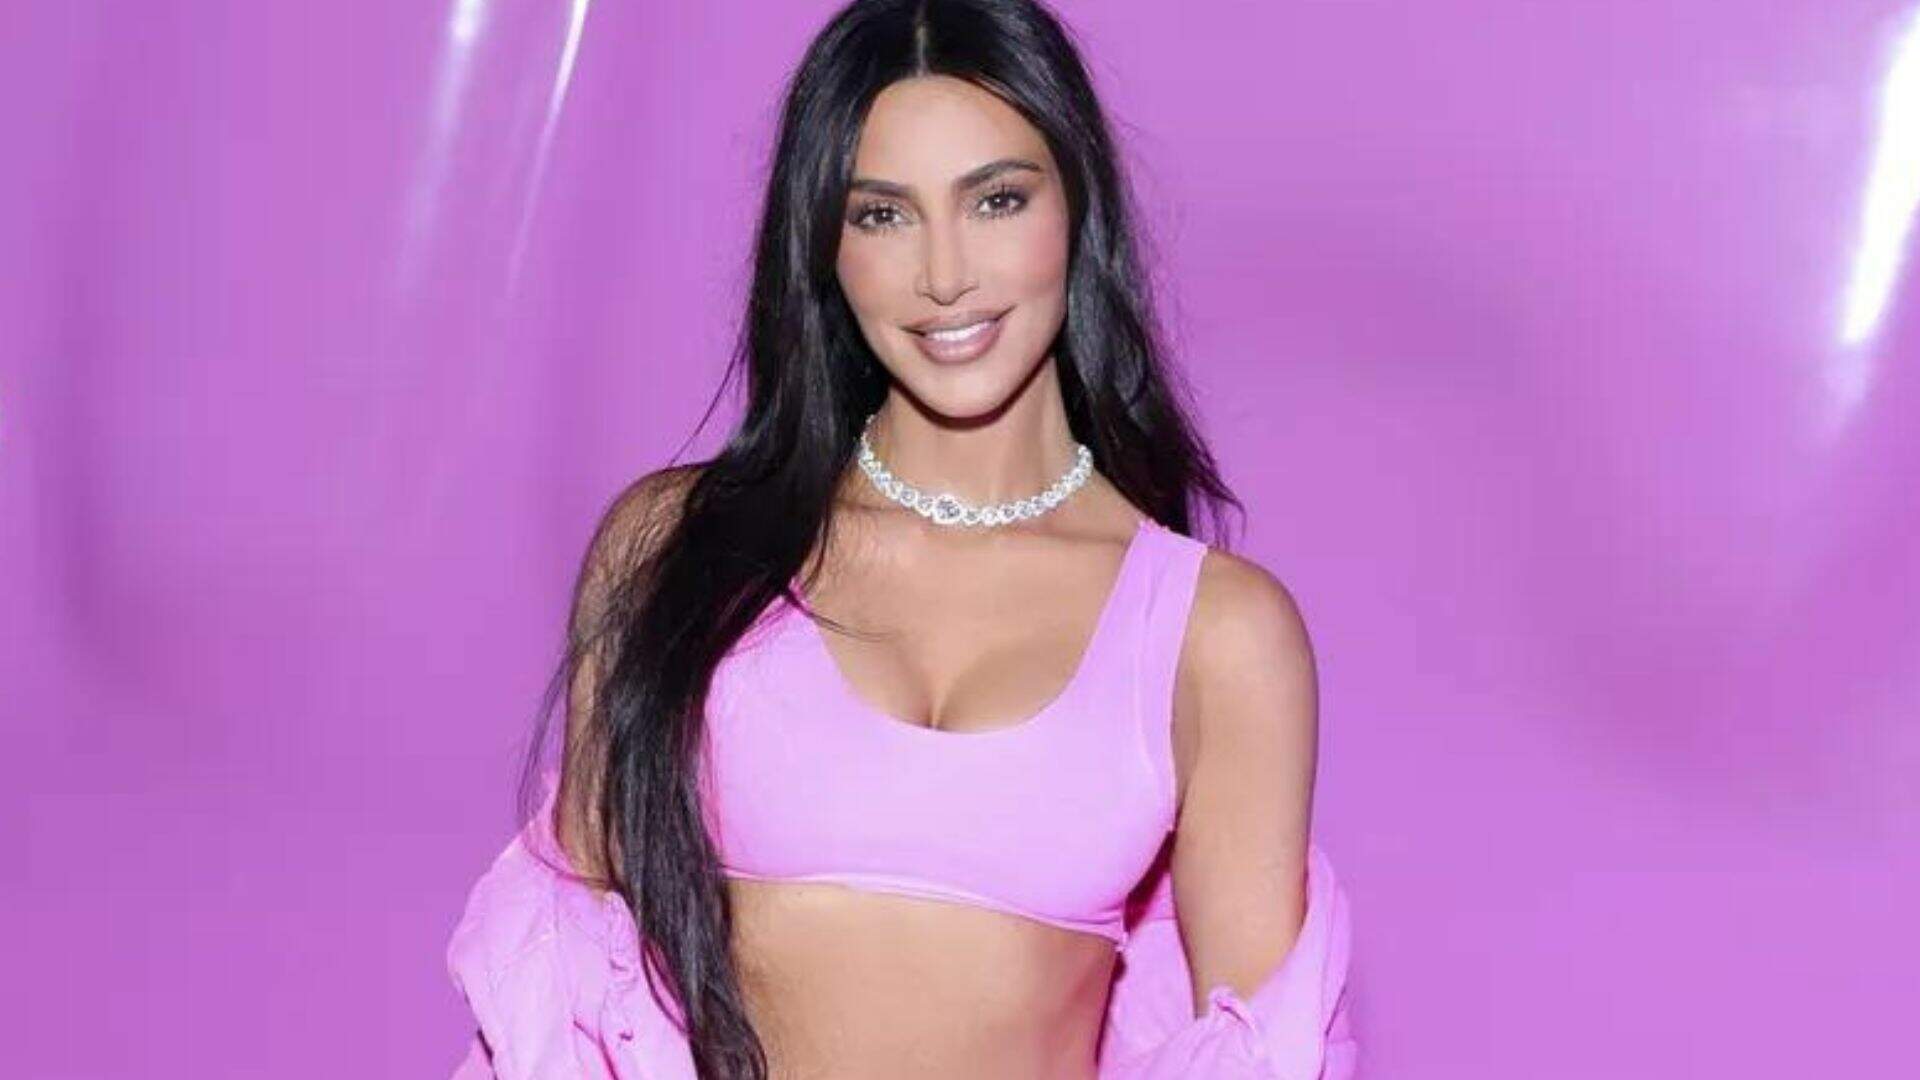 100% Barbiecore: Kim Kardashian aposta em look todo pink para evento de sua marca - Metropolitana FM